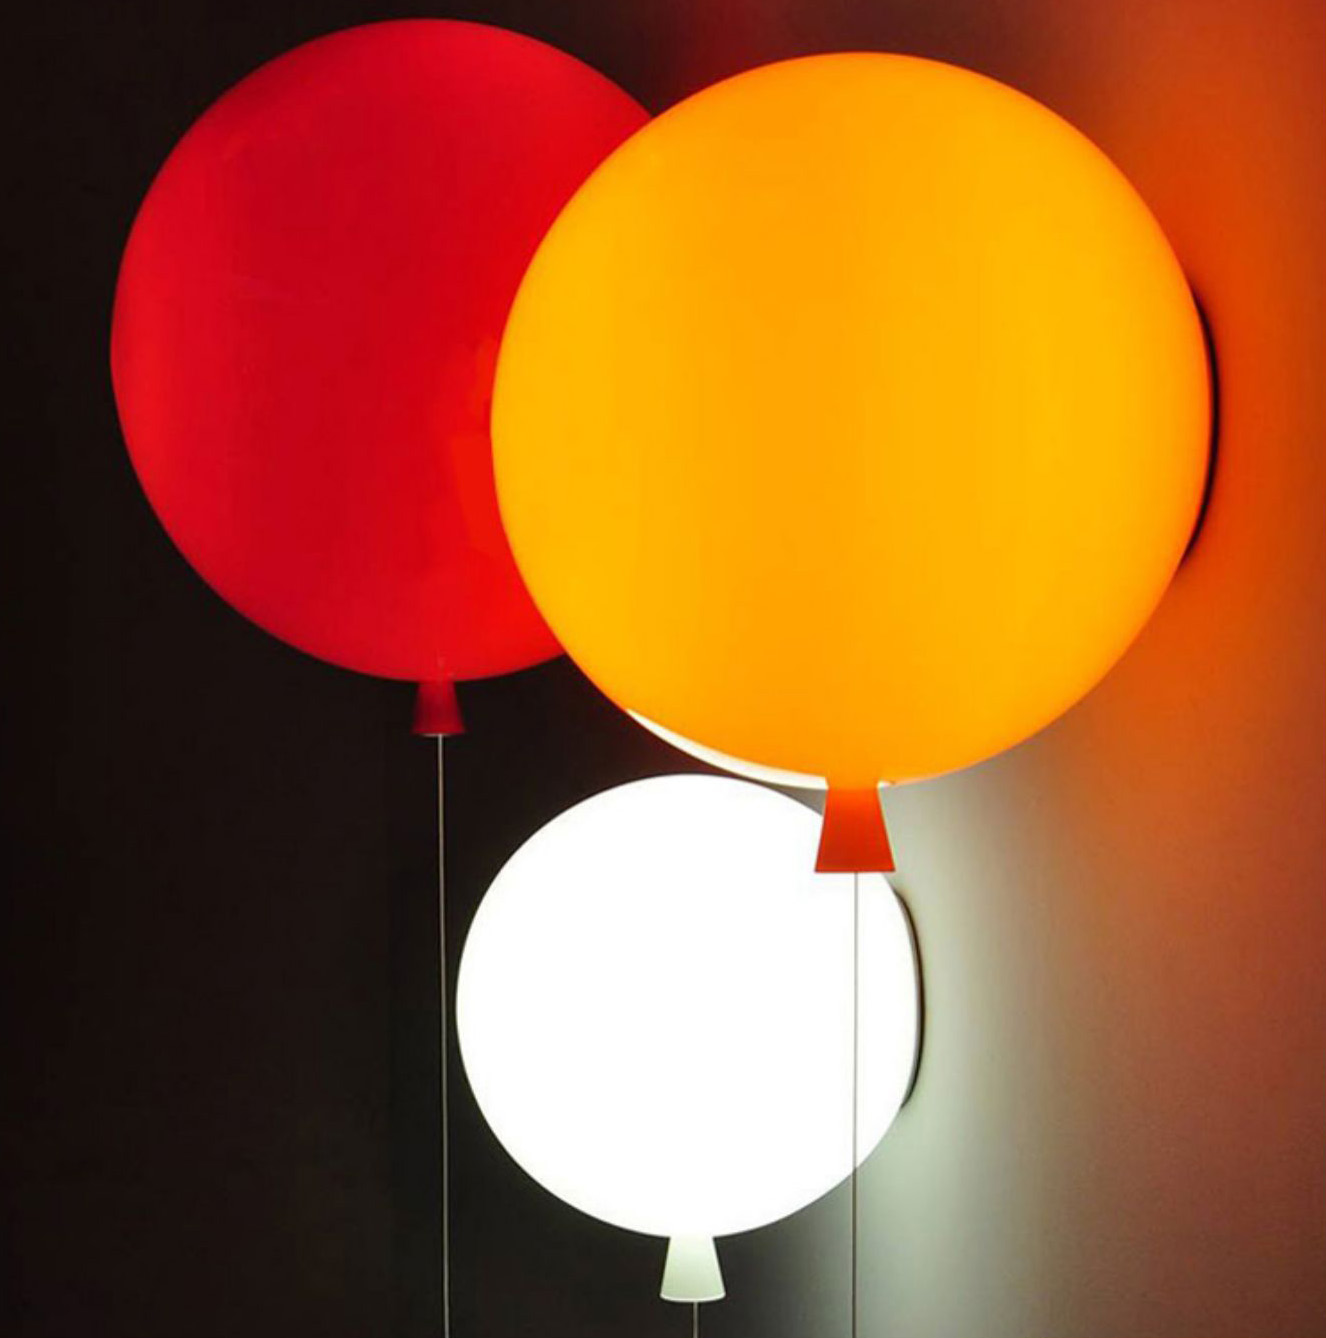 ขาย โคมไฟลูกโป่ง Balloon Ceiling Lamp